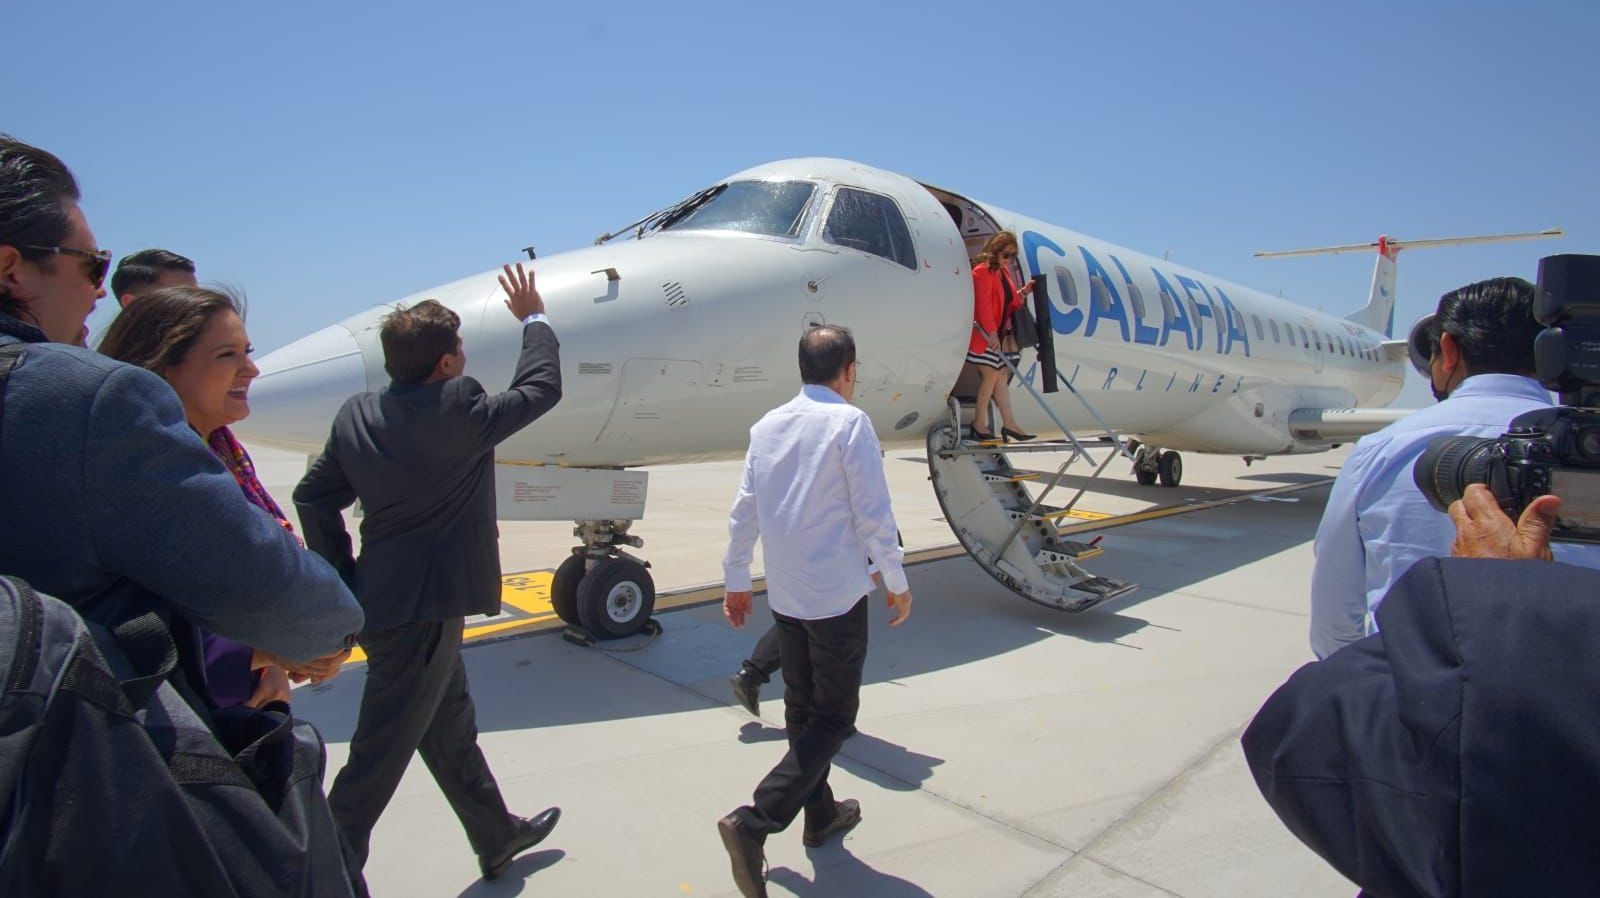 Aerolínea Calafia vendió vuelos sin estar autorizados: AFAC